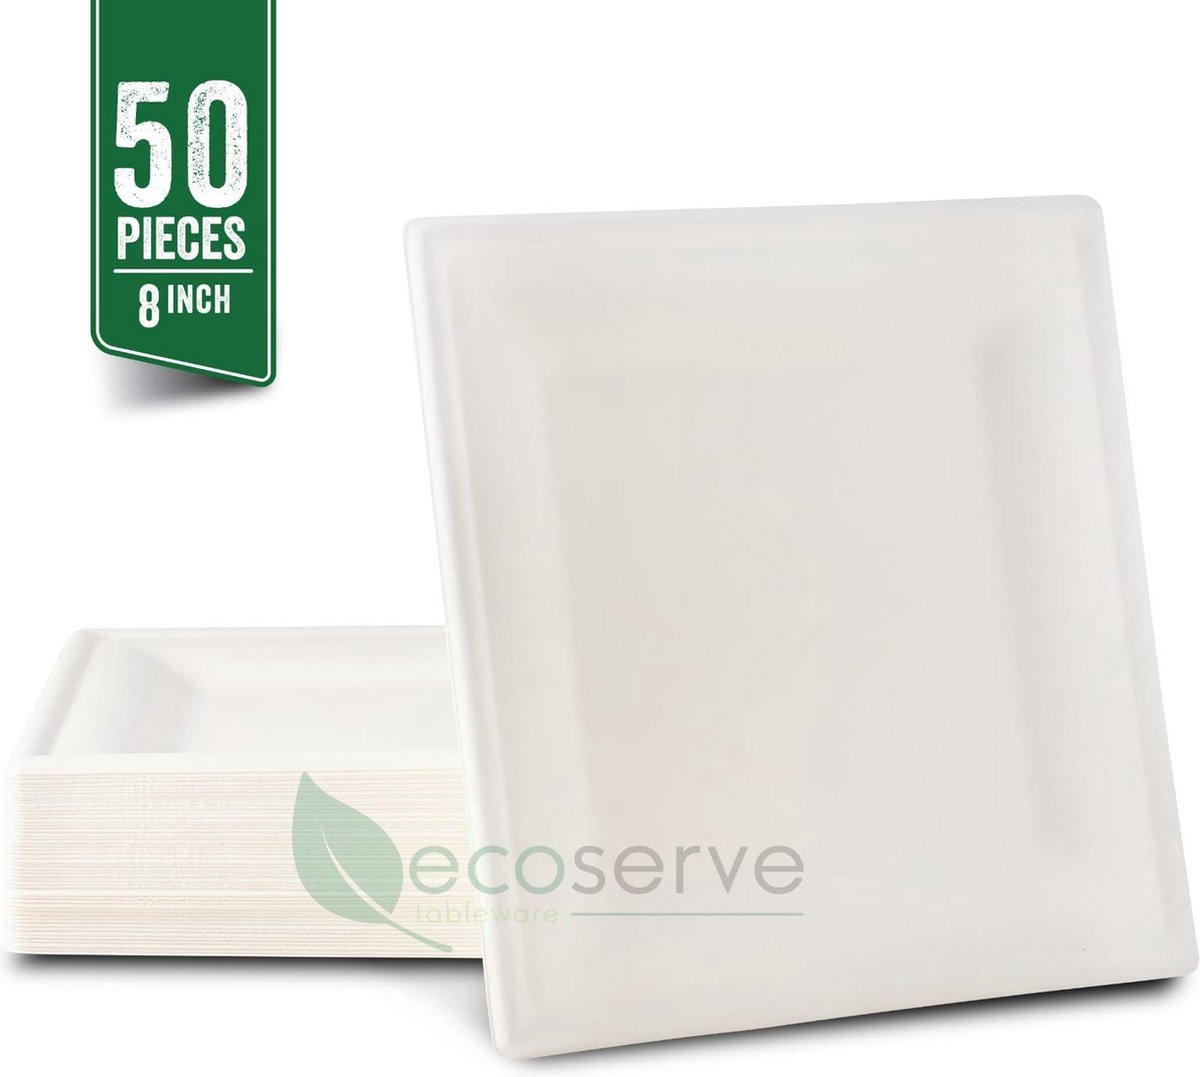 Ecoserve Tableware Wegwerp Borden - Bagasse - Square Plates 20 cm / 8 in - 50 Stuk - 100% Biologisch Afbreekbaar